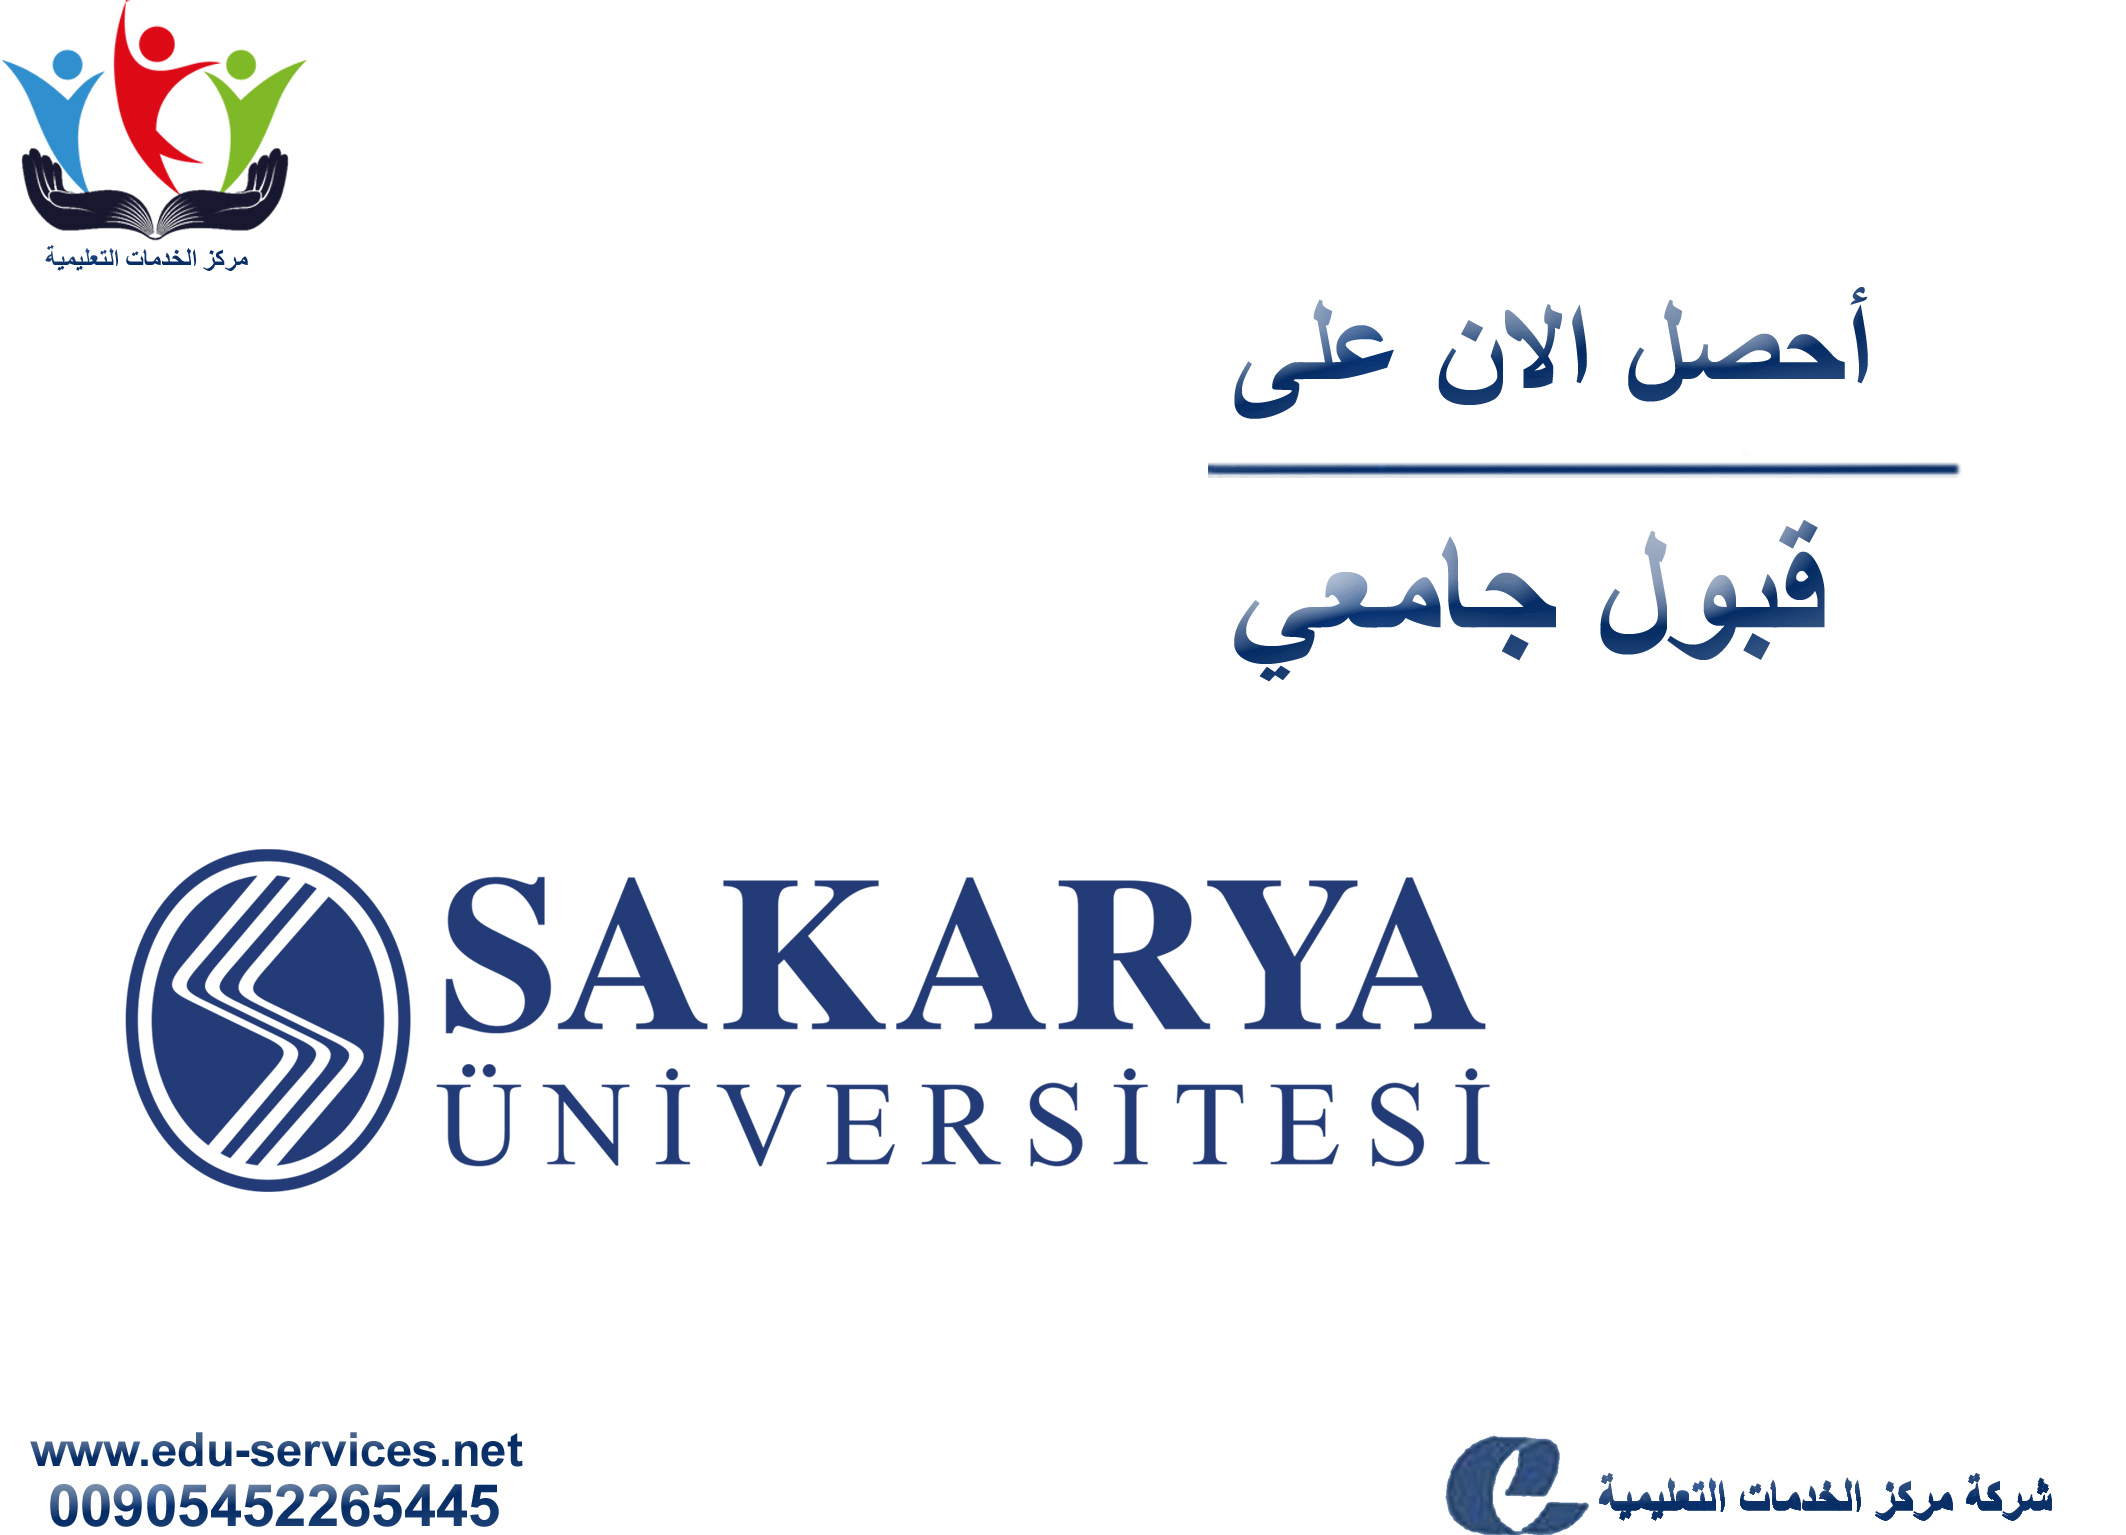 افتتاح التسجيل على جامعة سكاريا لبرنامج الدراسات العليا للعام 2019-2020